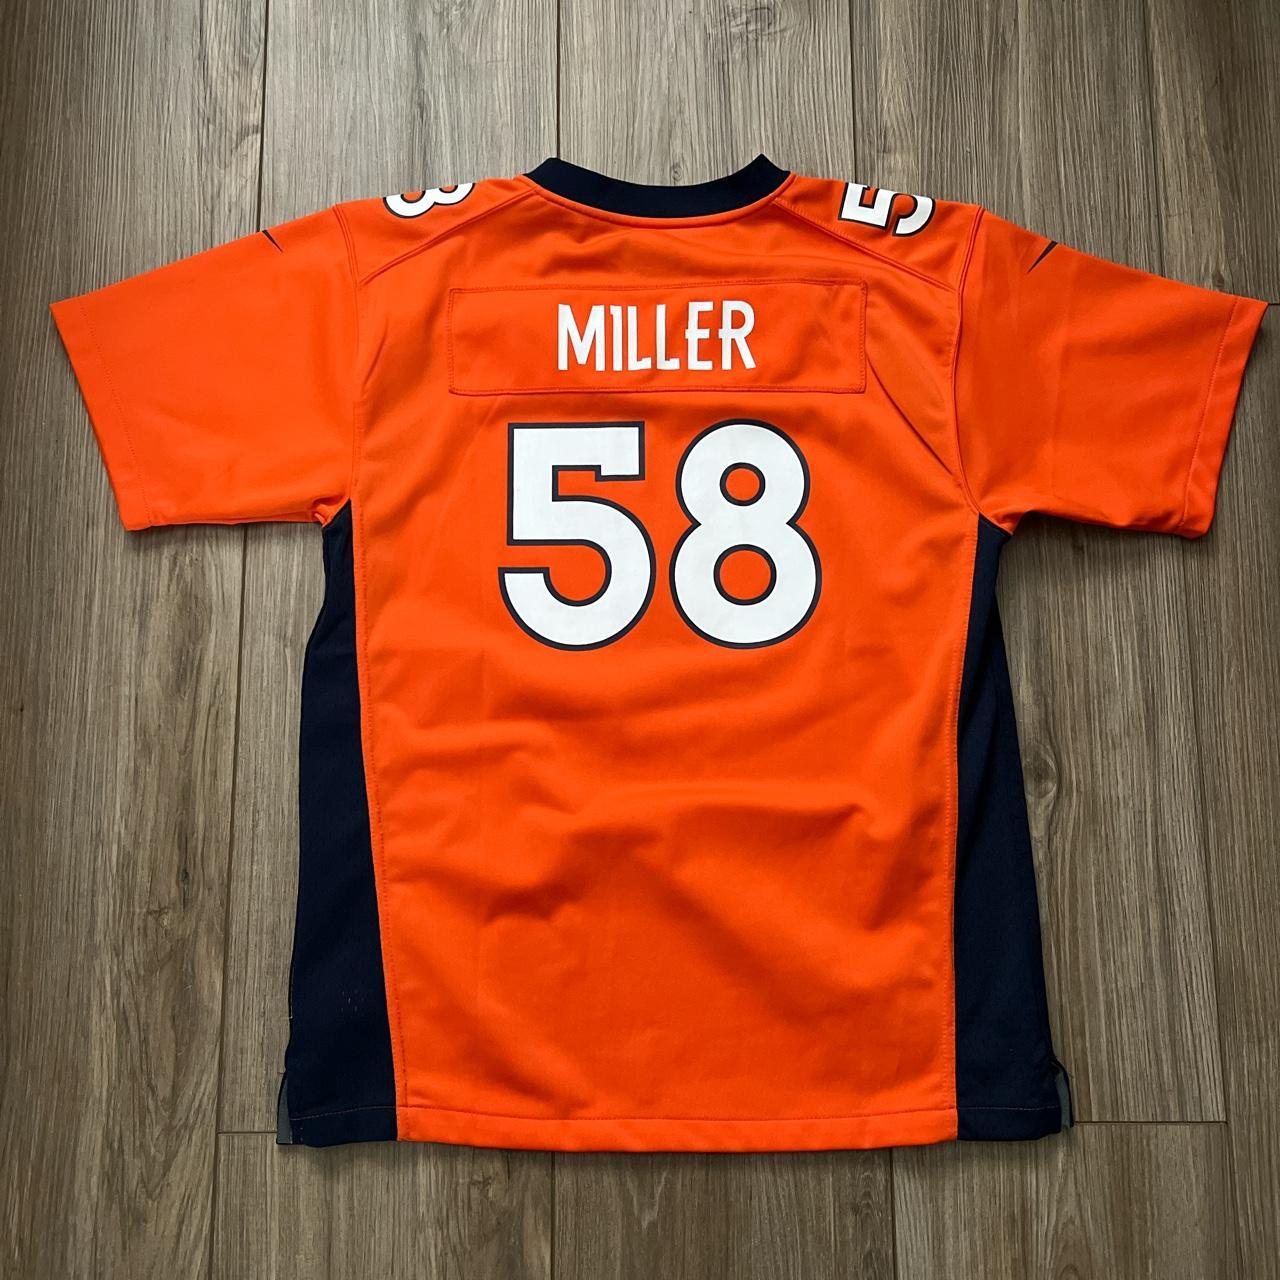 von miller authentic jersey